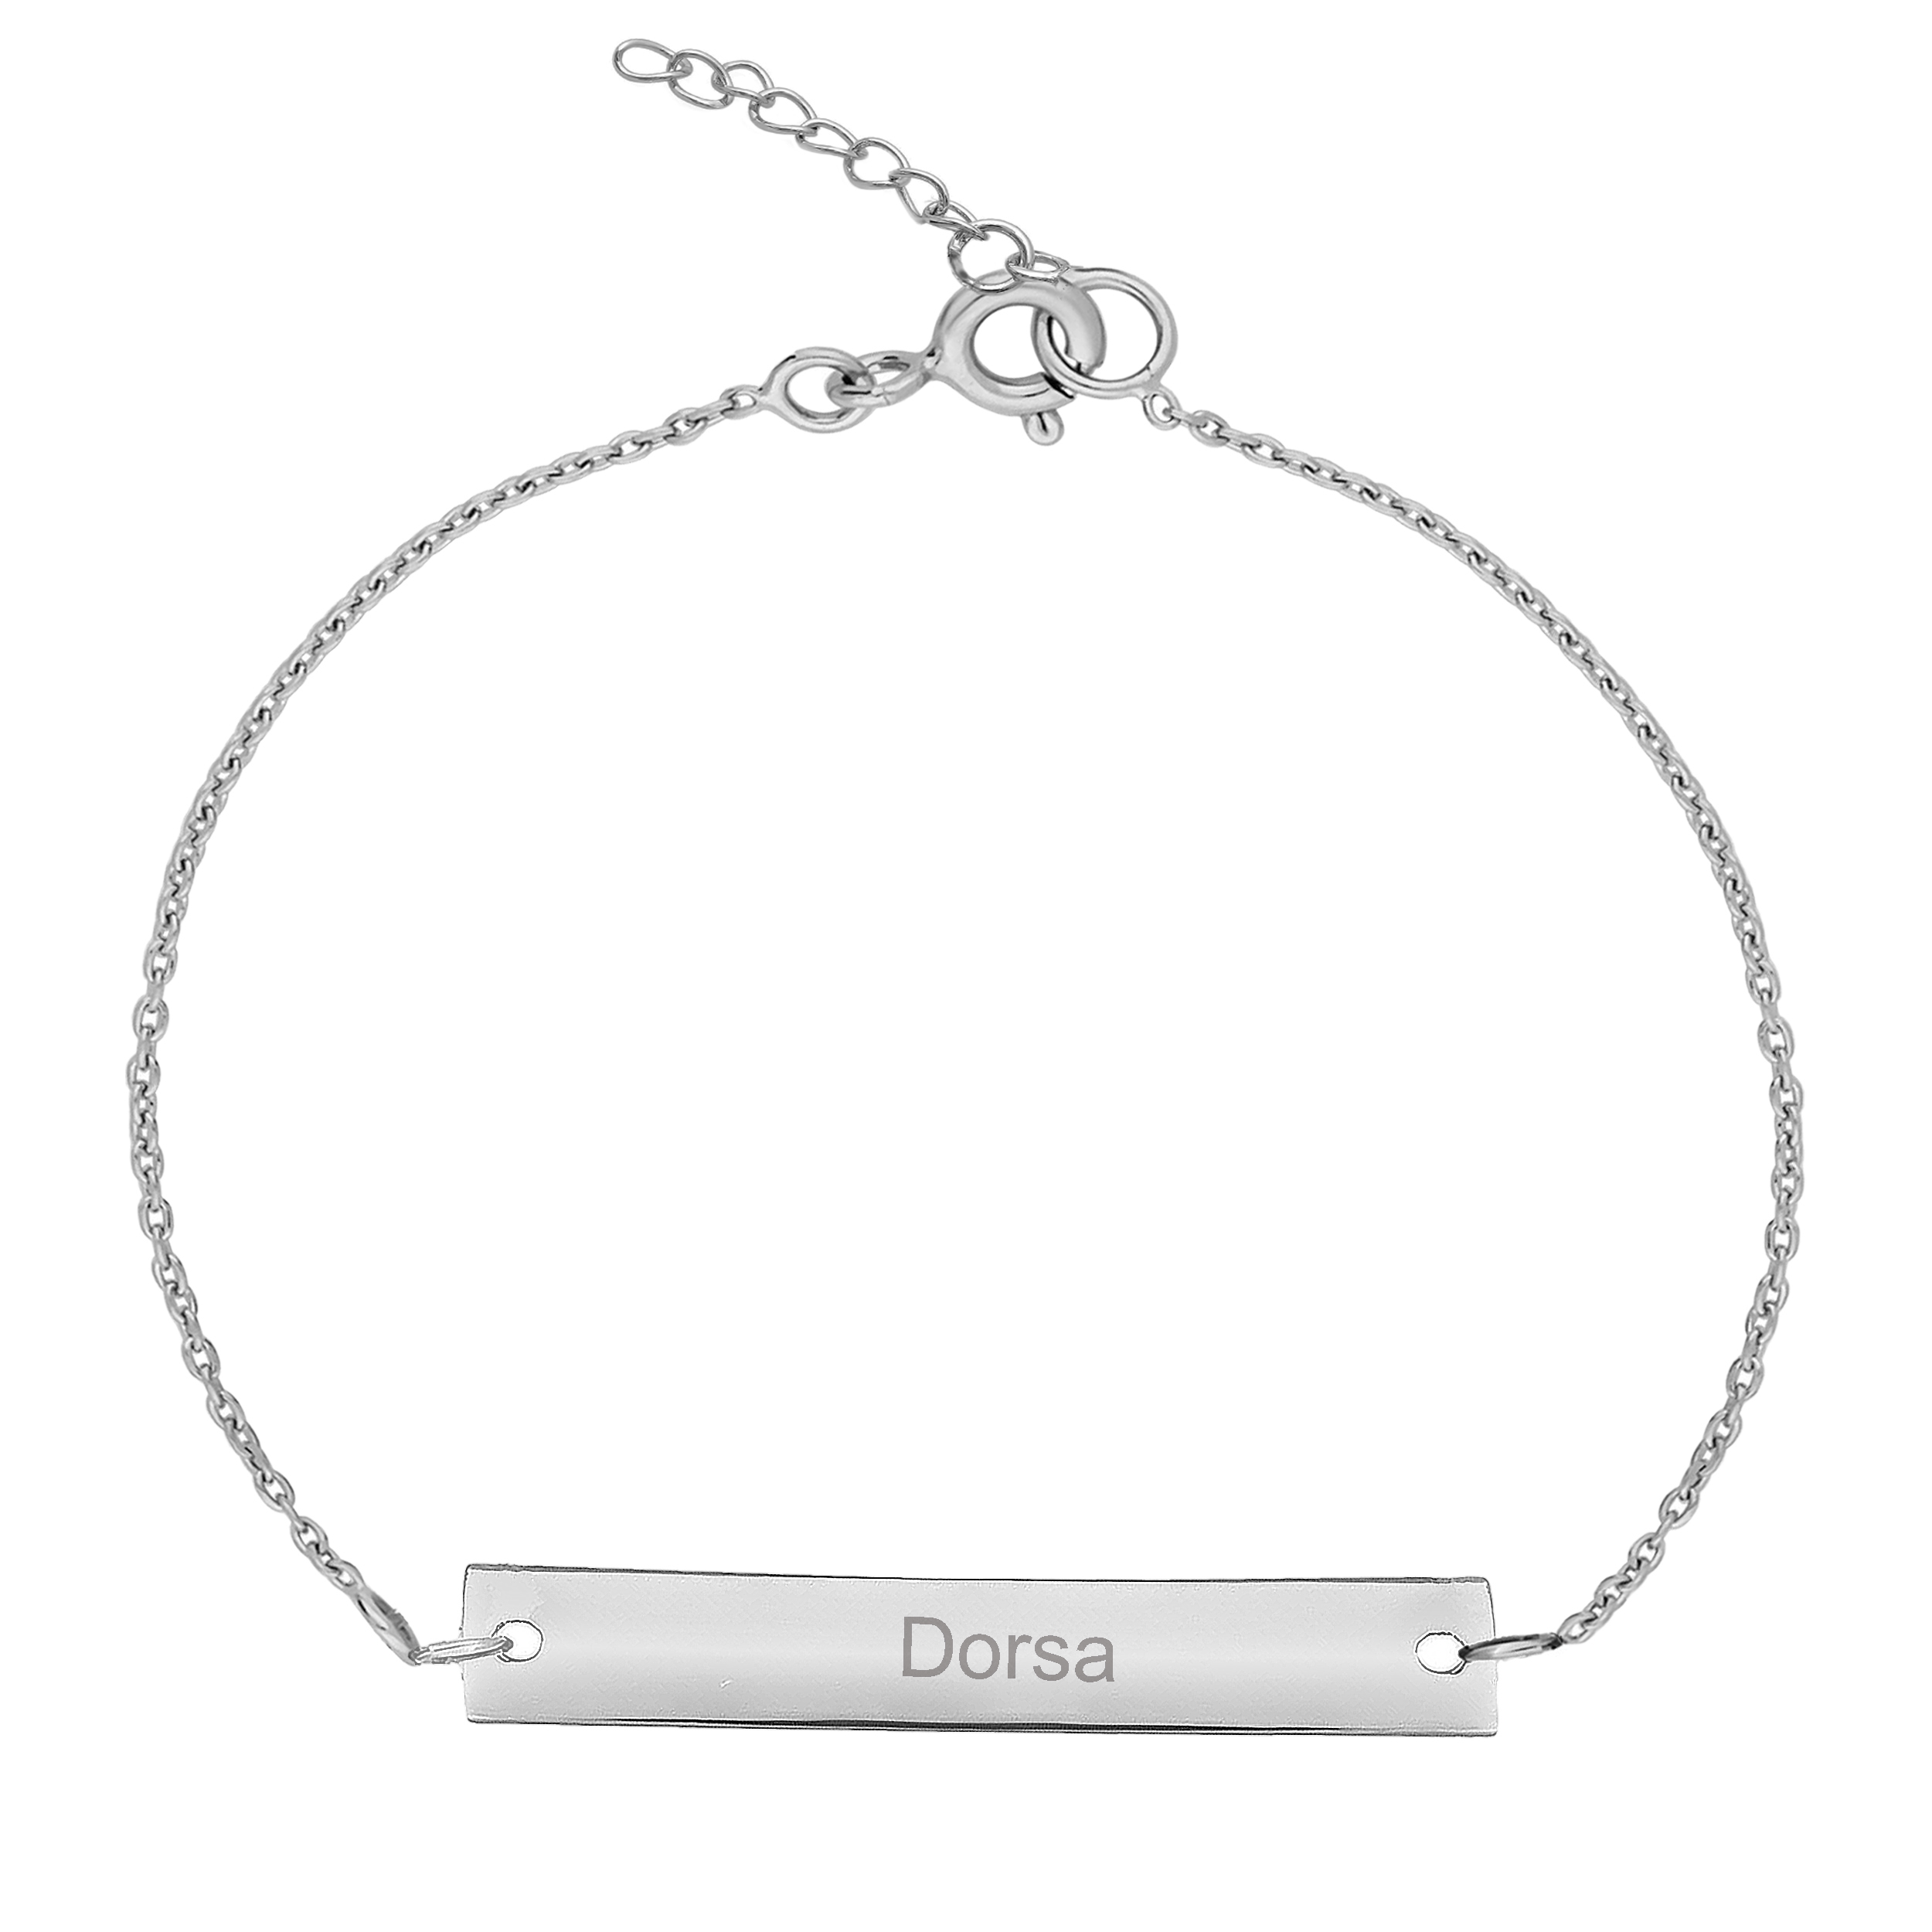 دستبند نقره زنانه ترمه ۱ مدل درسا کد DN 1079